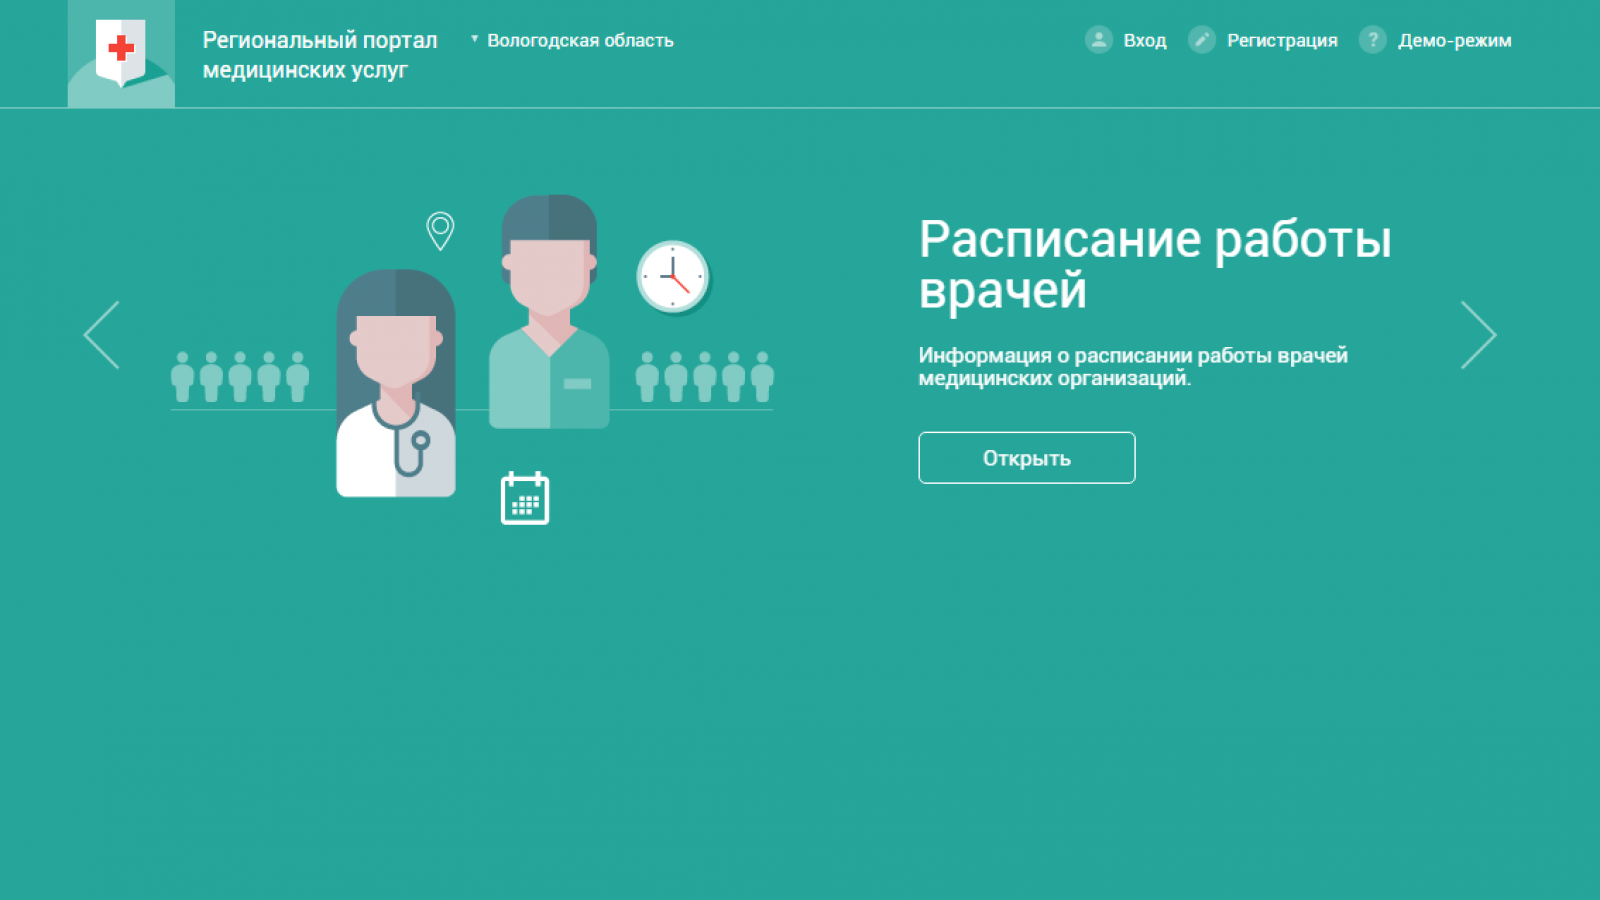 На Вологодчине запустят новый сайт для получения мед. услуг